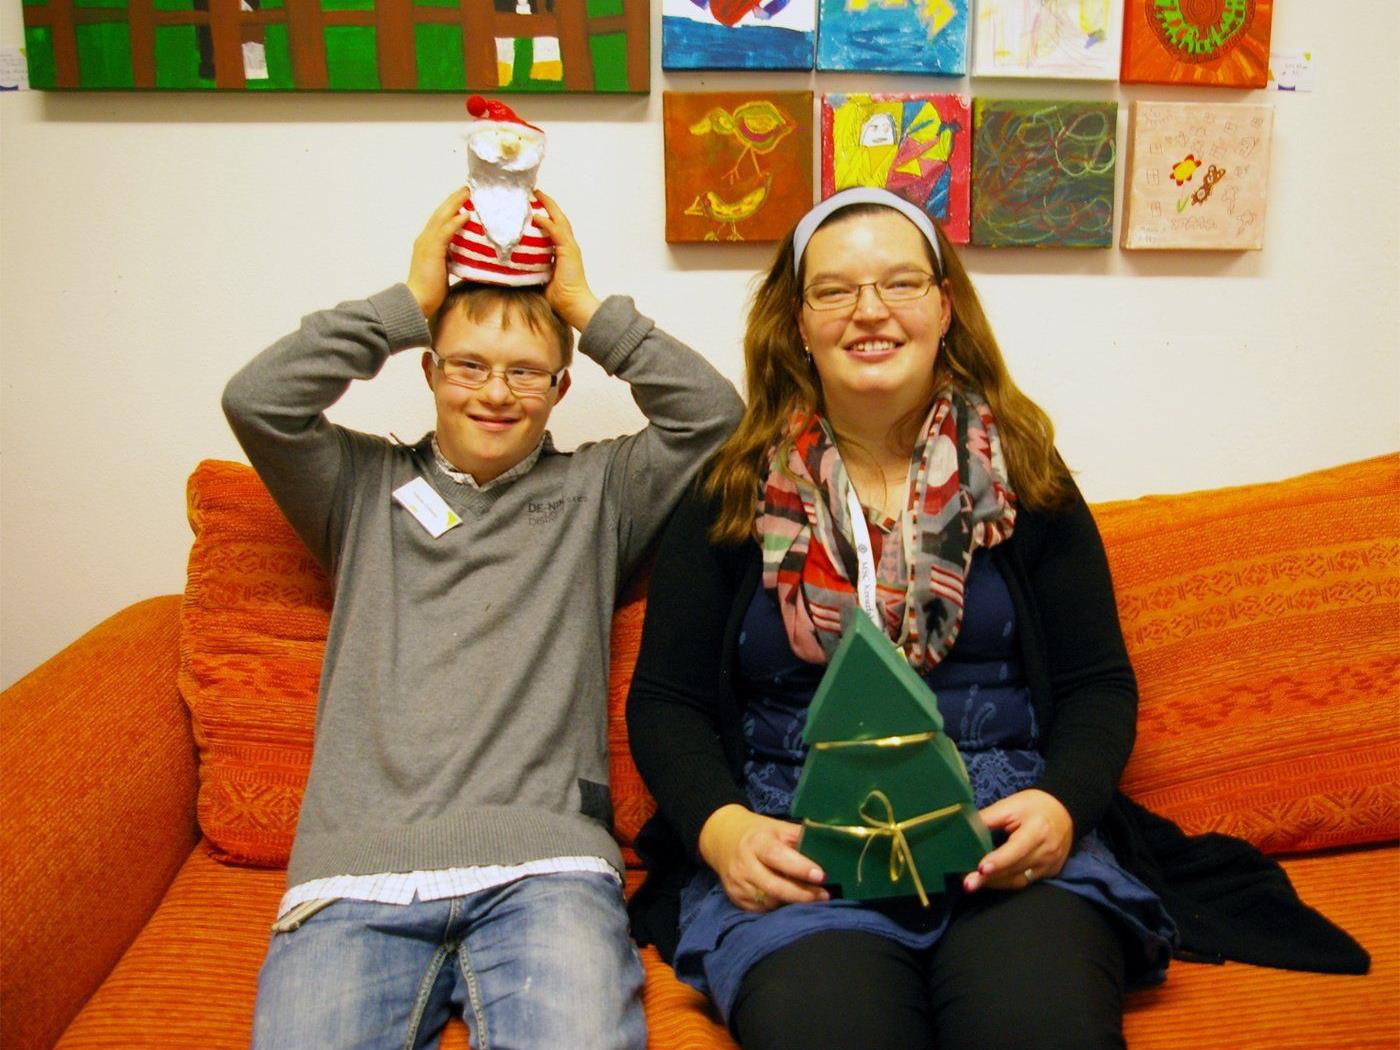 Weihnachtsausstellung.jpg: In den Brockenhäusern der Lebenshilfe Vorarlberg herrscht bereits Weihnachtsstimmung